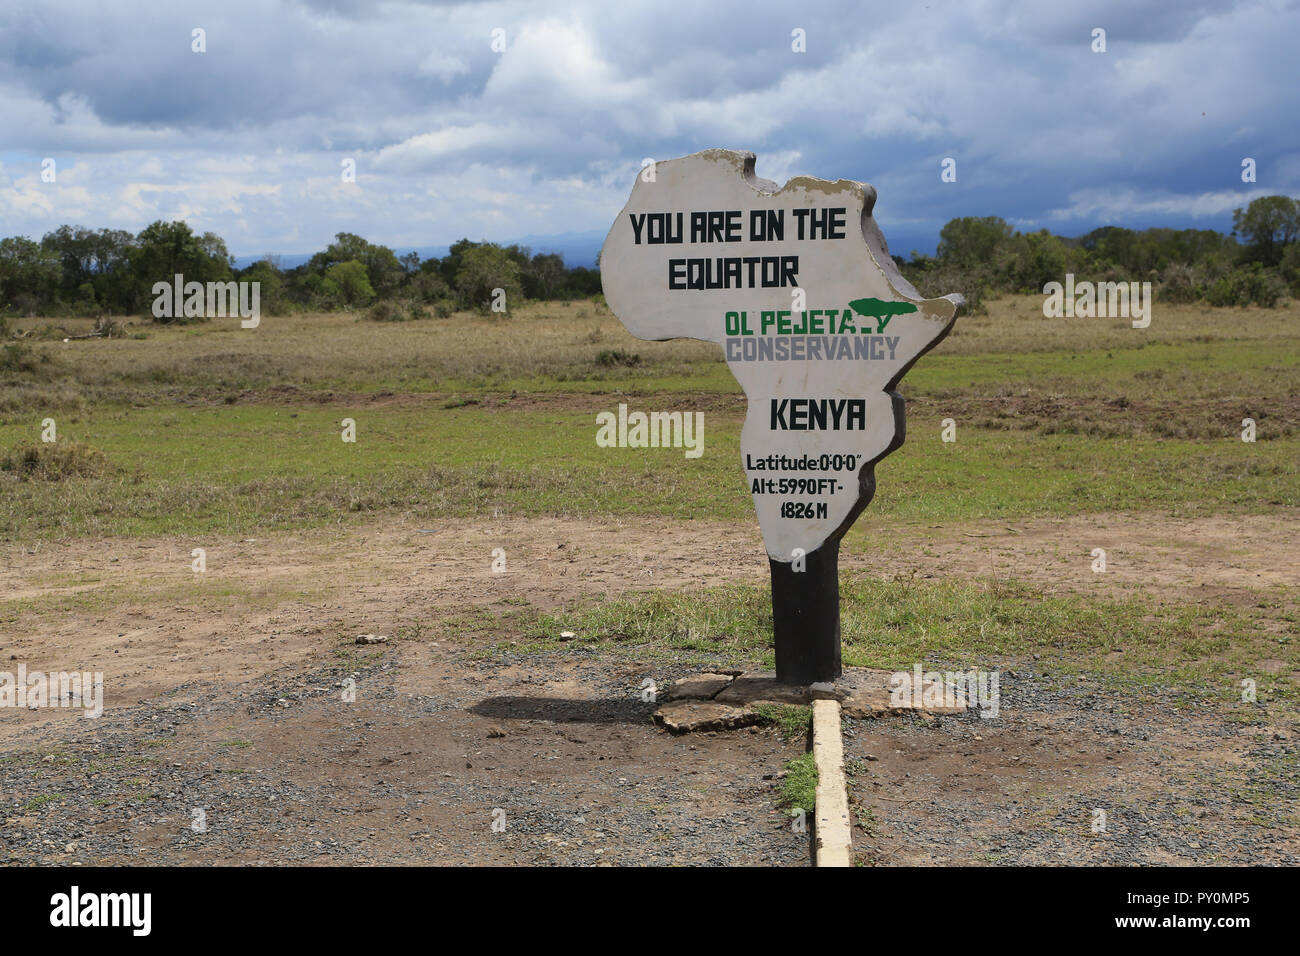 Le signe indiquant que vous êtes sur l'equateur, à l'Ol Pejeta Conservancy au Kenya. Banque D'Images